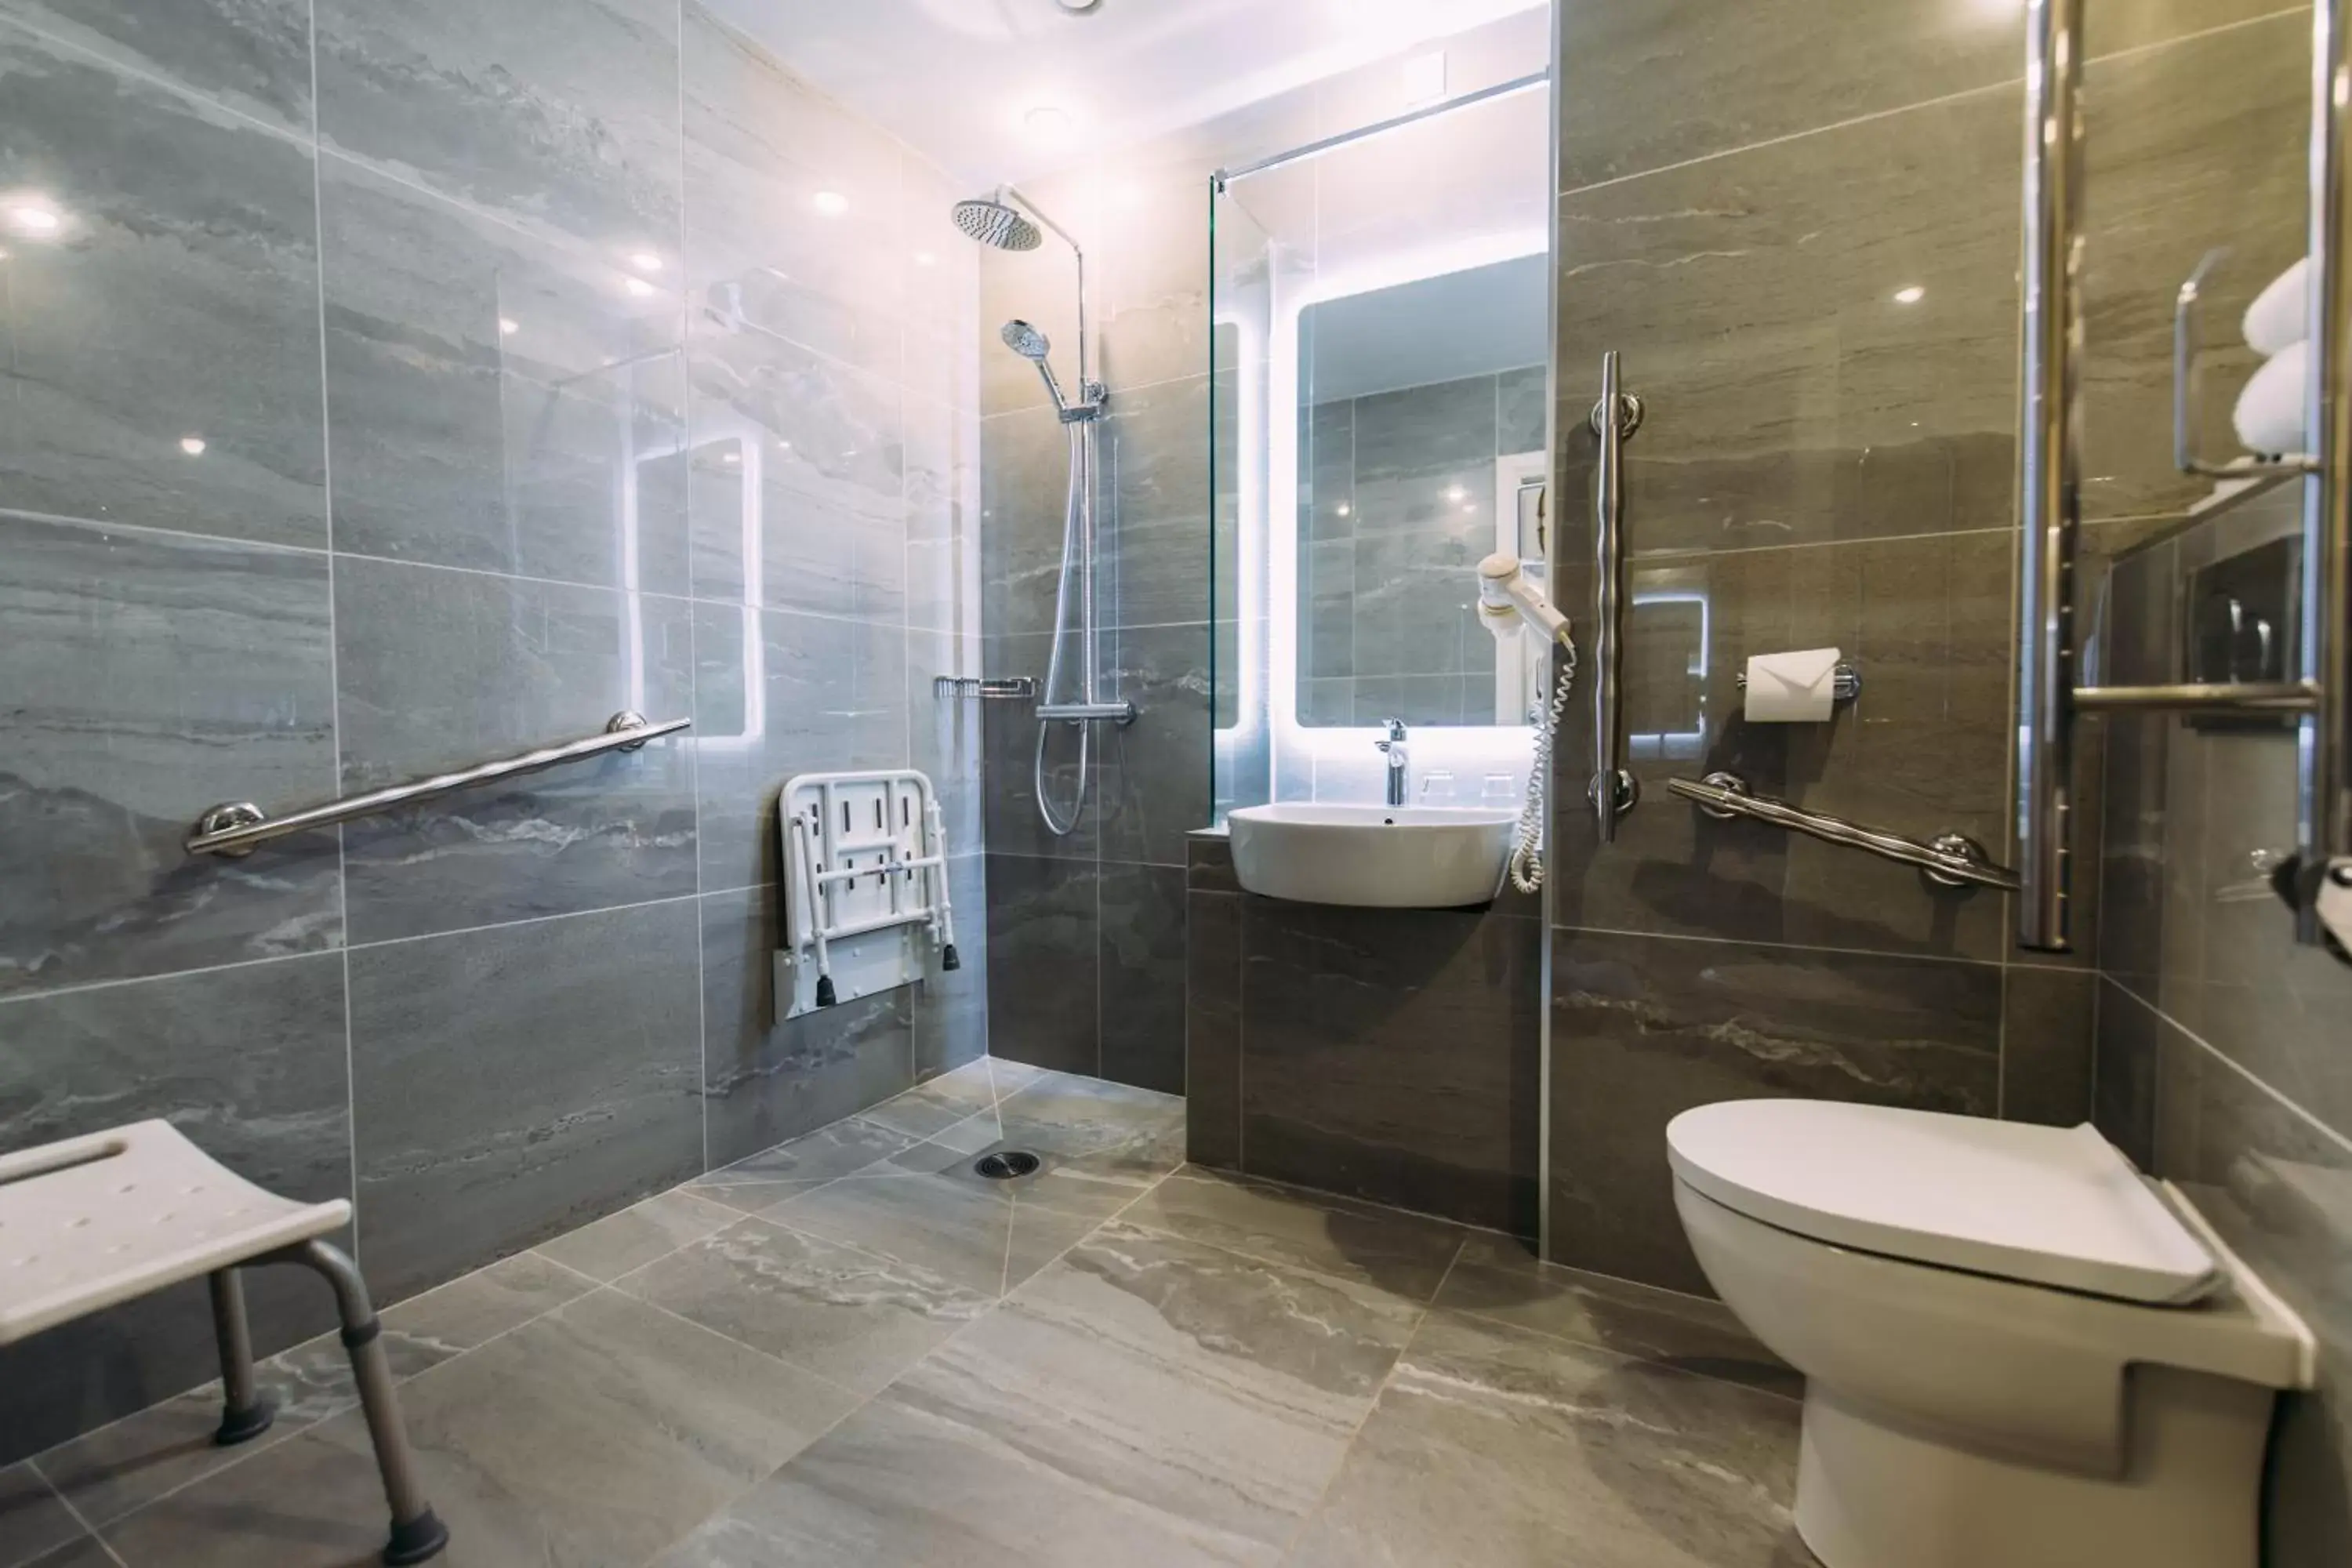 Bathroom in Armagh City Hotel